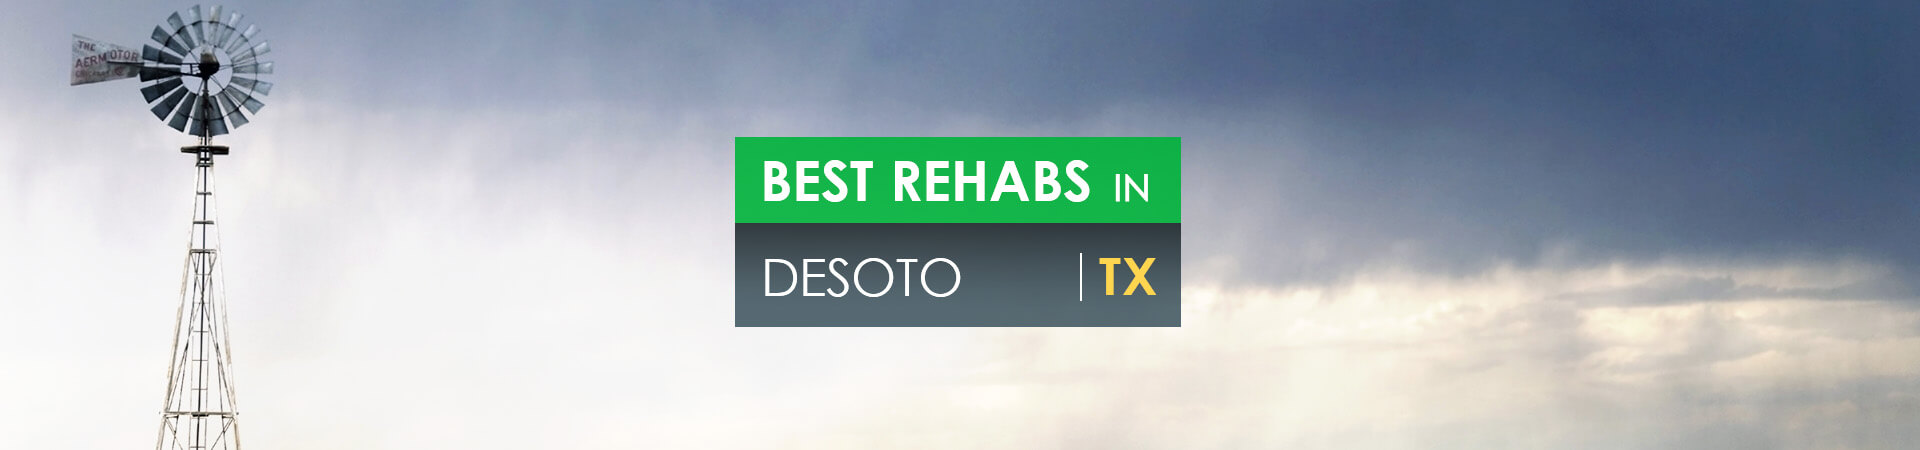 Best rehabs in DeSoto, TX